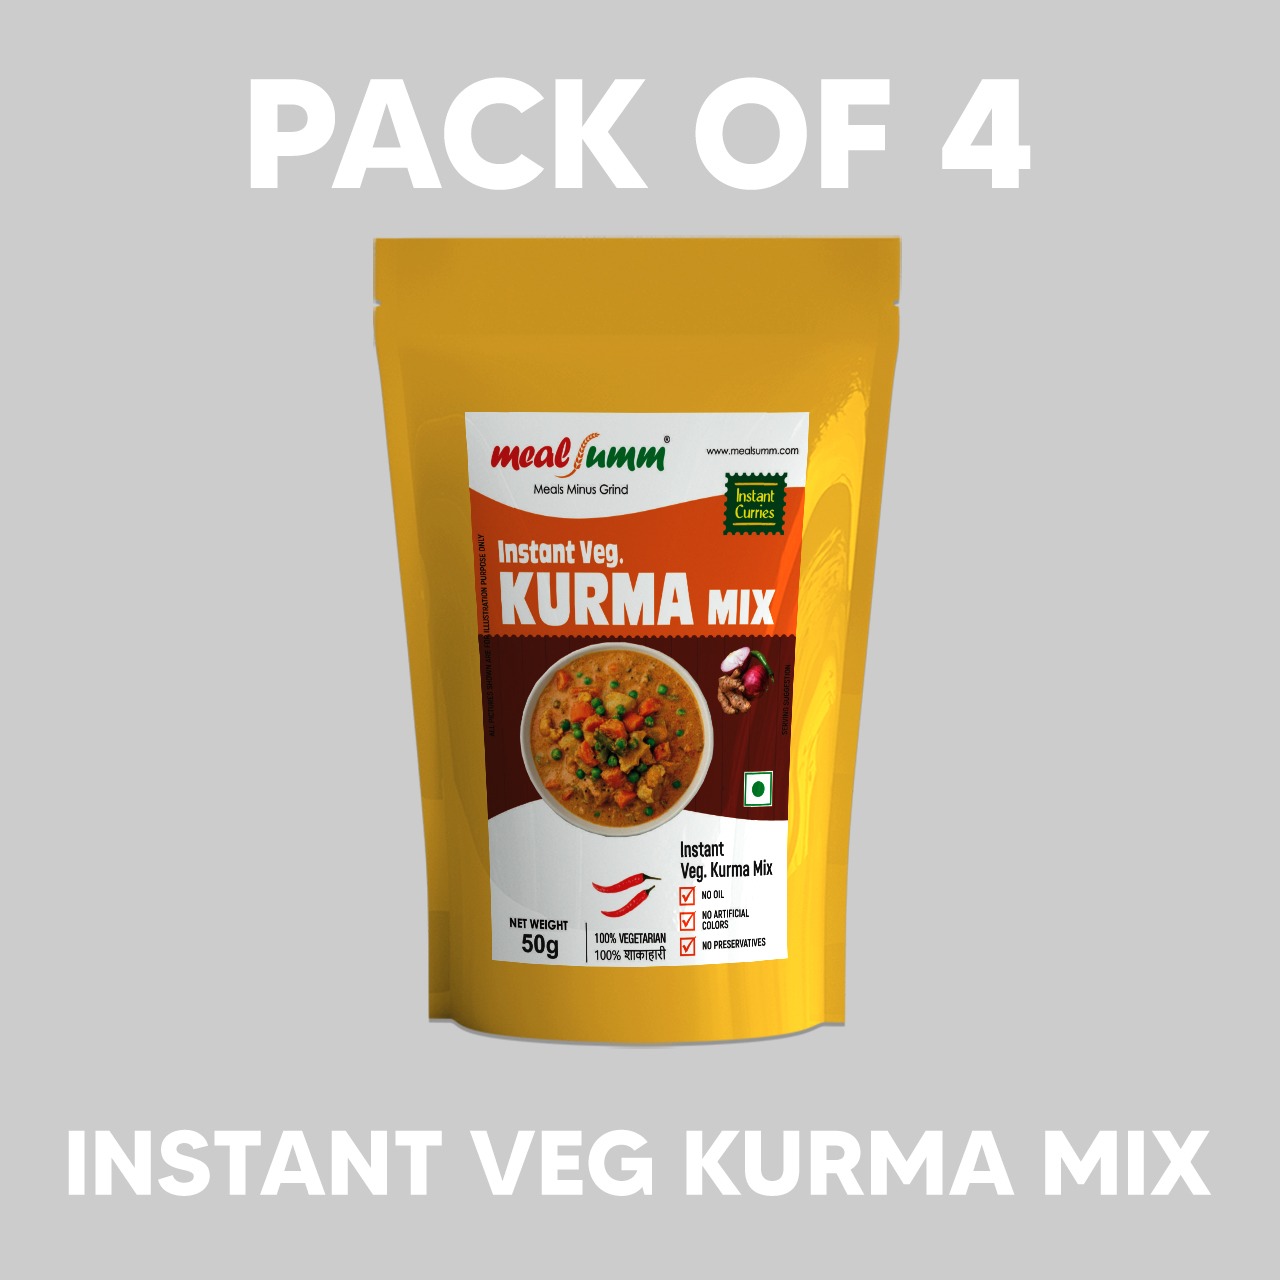 Instant Veg Kurma Mix